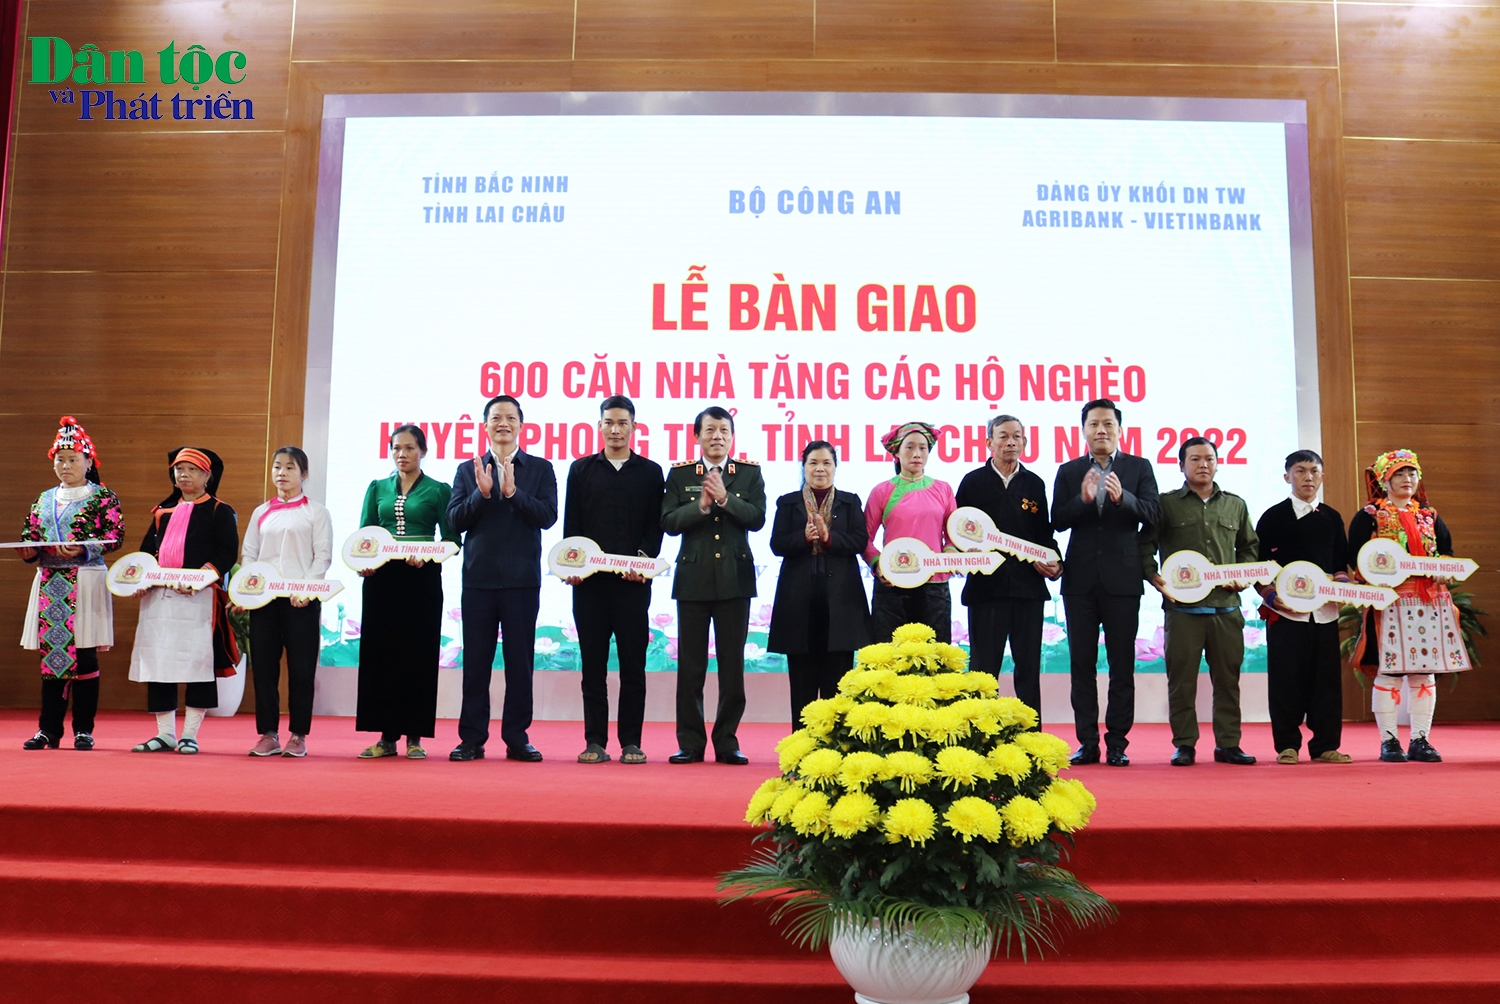 Thứ trưởng Bộ Công an Lương Tam Quang, Bí thư Tỉnh ủy Lai Châu Giàng Páo Mỷ cùng các đại biểu trao tượng trưng nhà tình nghĩa và quà tặng cho các hộ nghèo thuộc huyện Phong Thổ, tỉnh Lai Châu 